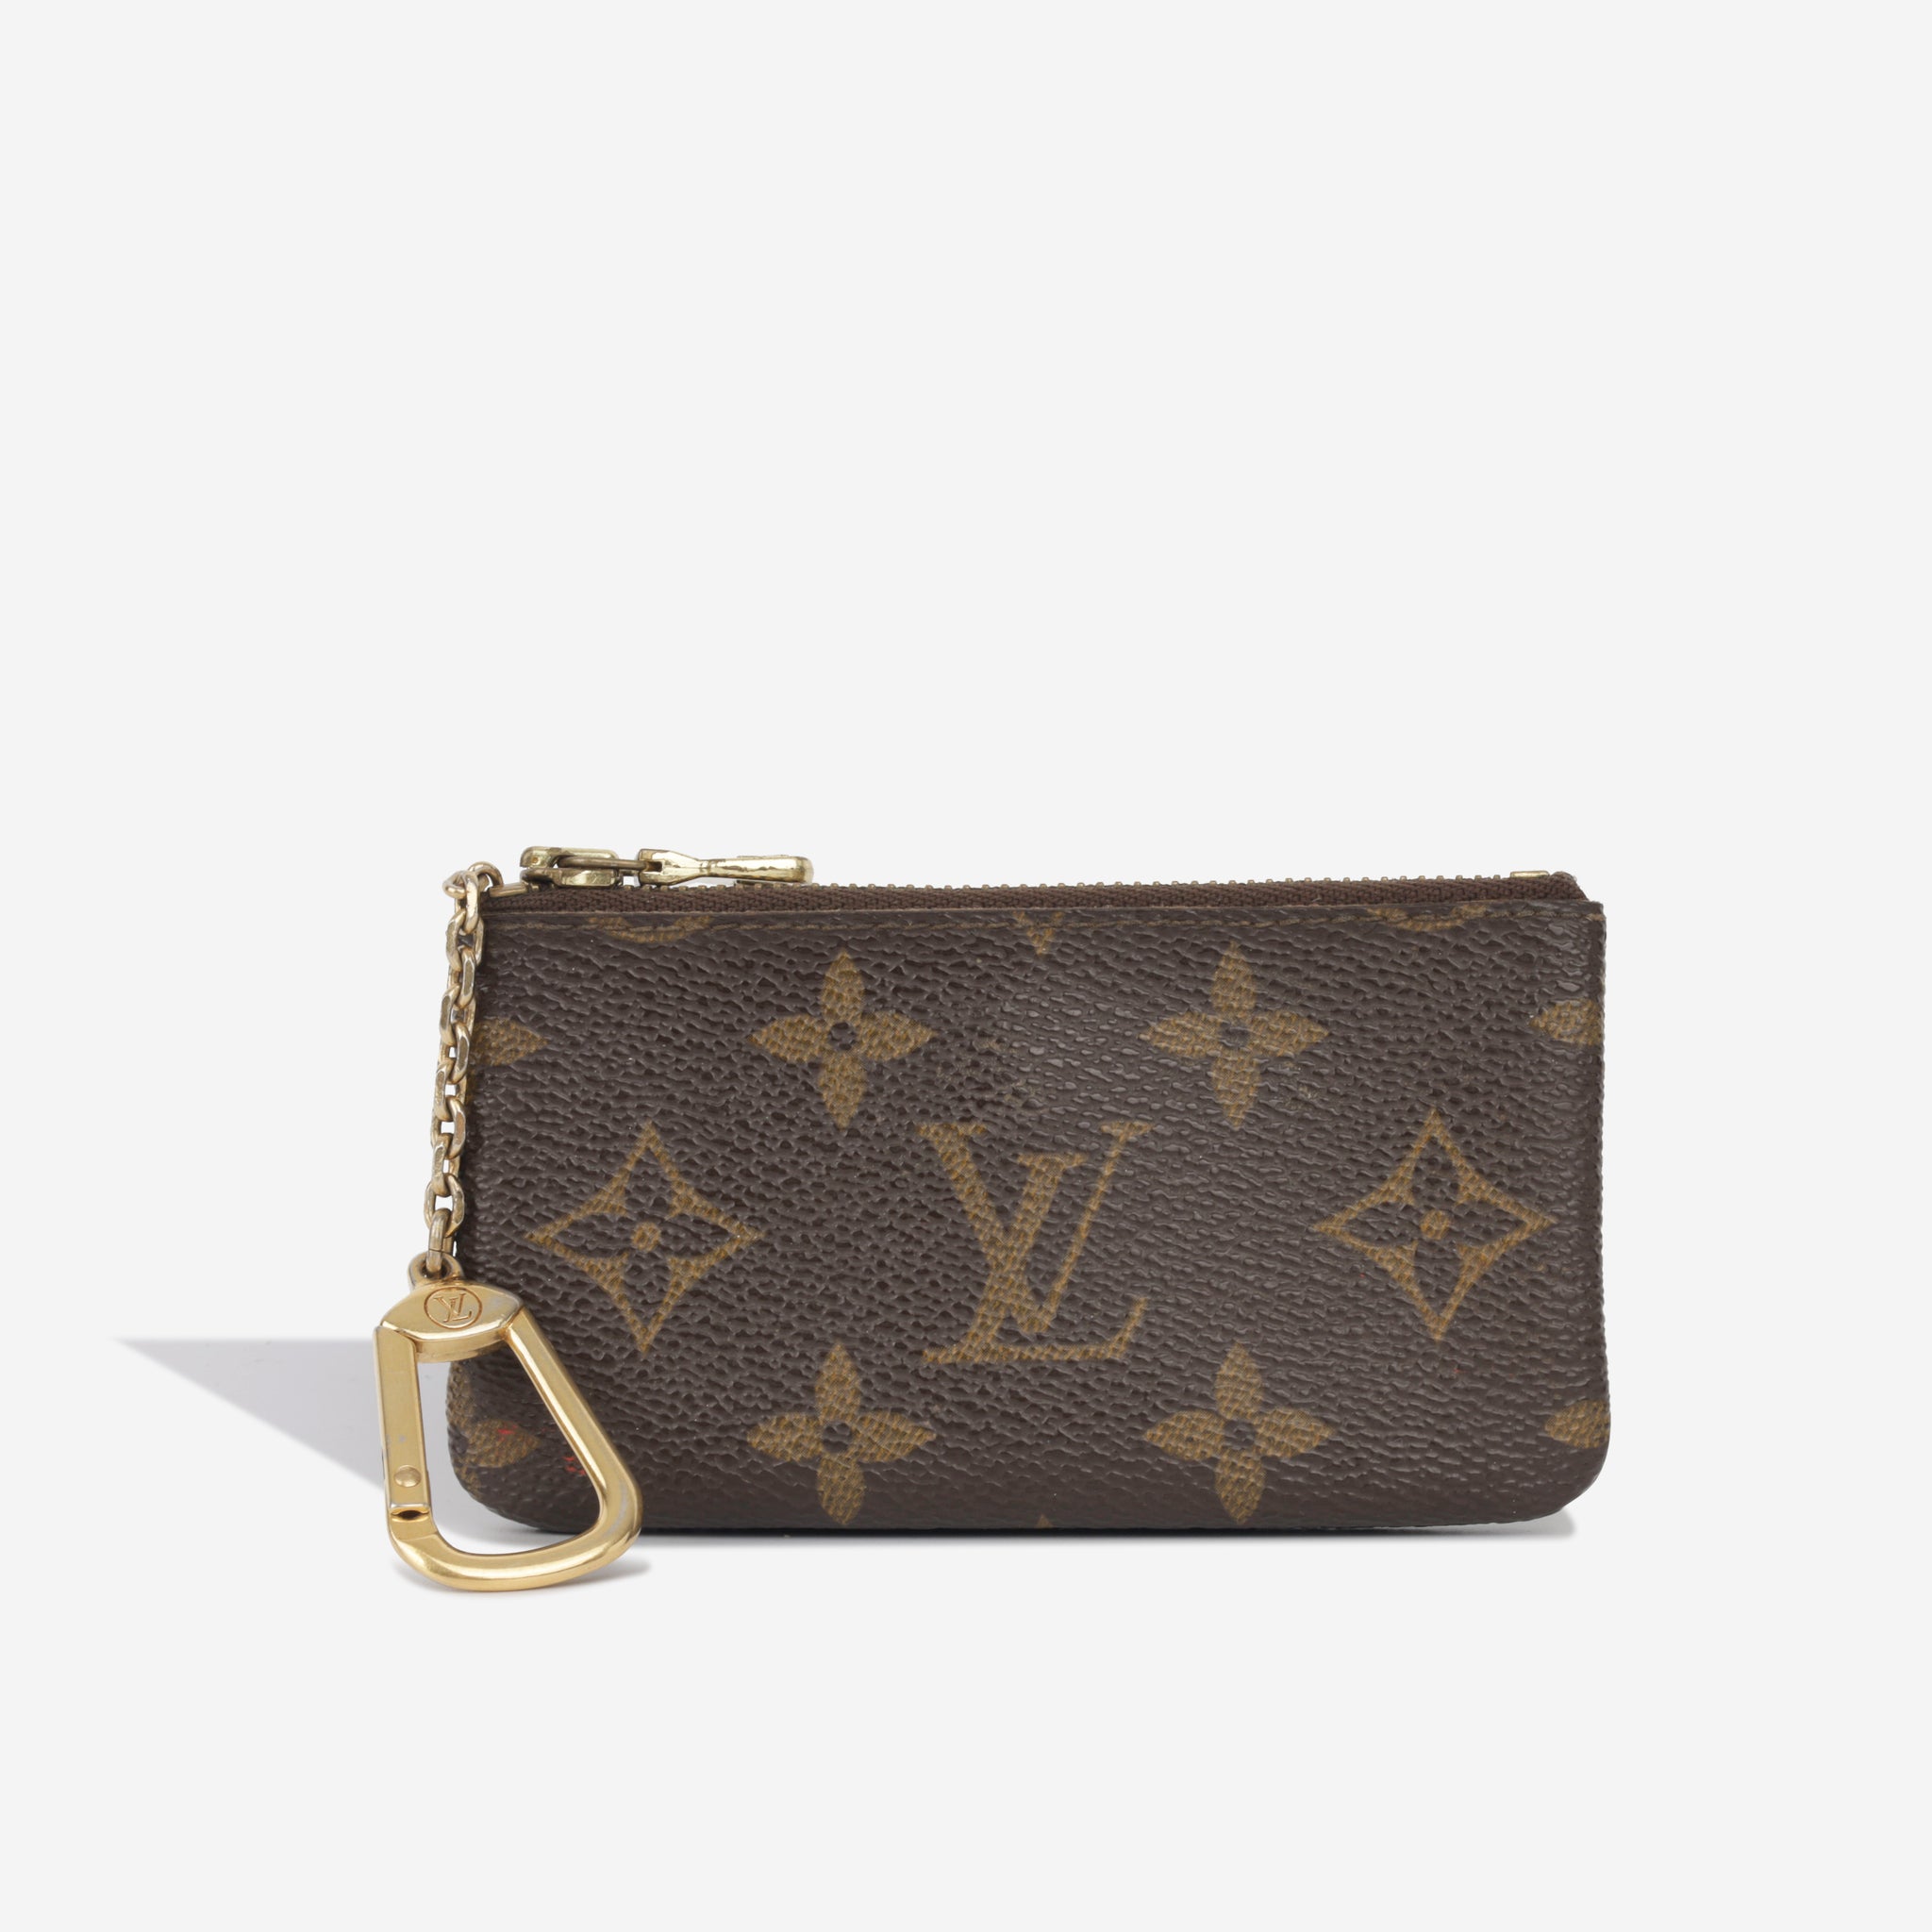 Louis Vuitton - Mini Key Pouch - Monogram Canvas - Vintage